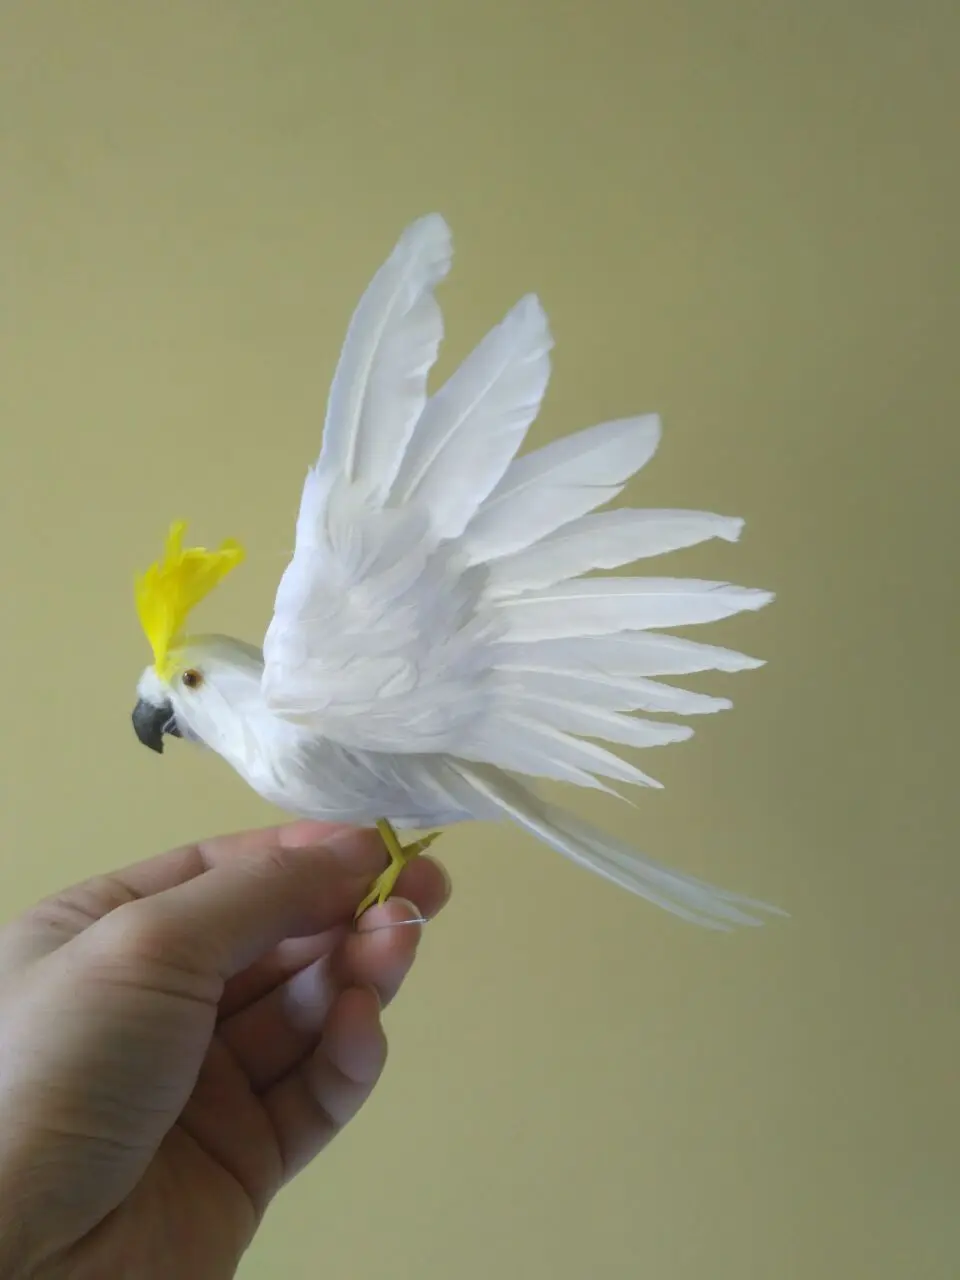 Симпатичные Моделирование Какаду игрушка полиэтилен и меха Крылья Белый попугай модель подарок около 28x20 см 1472